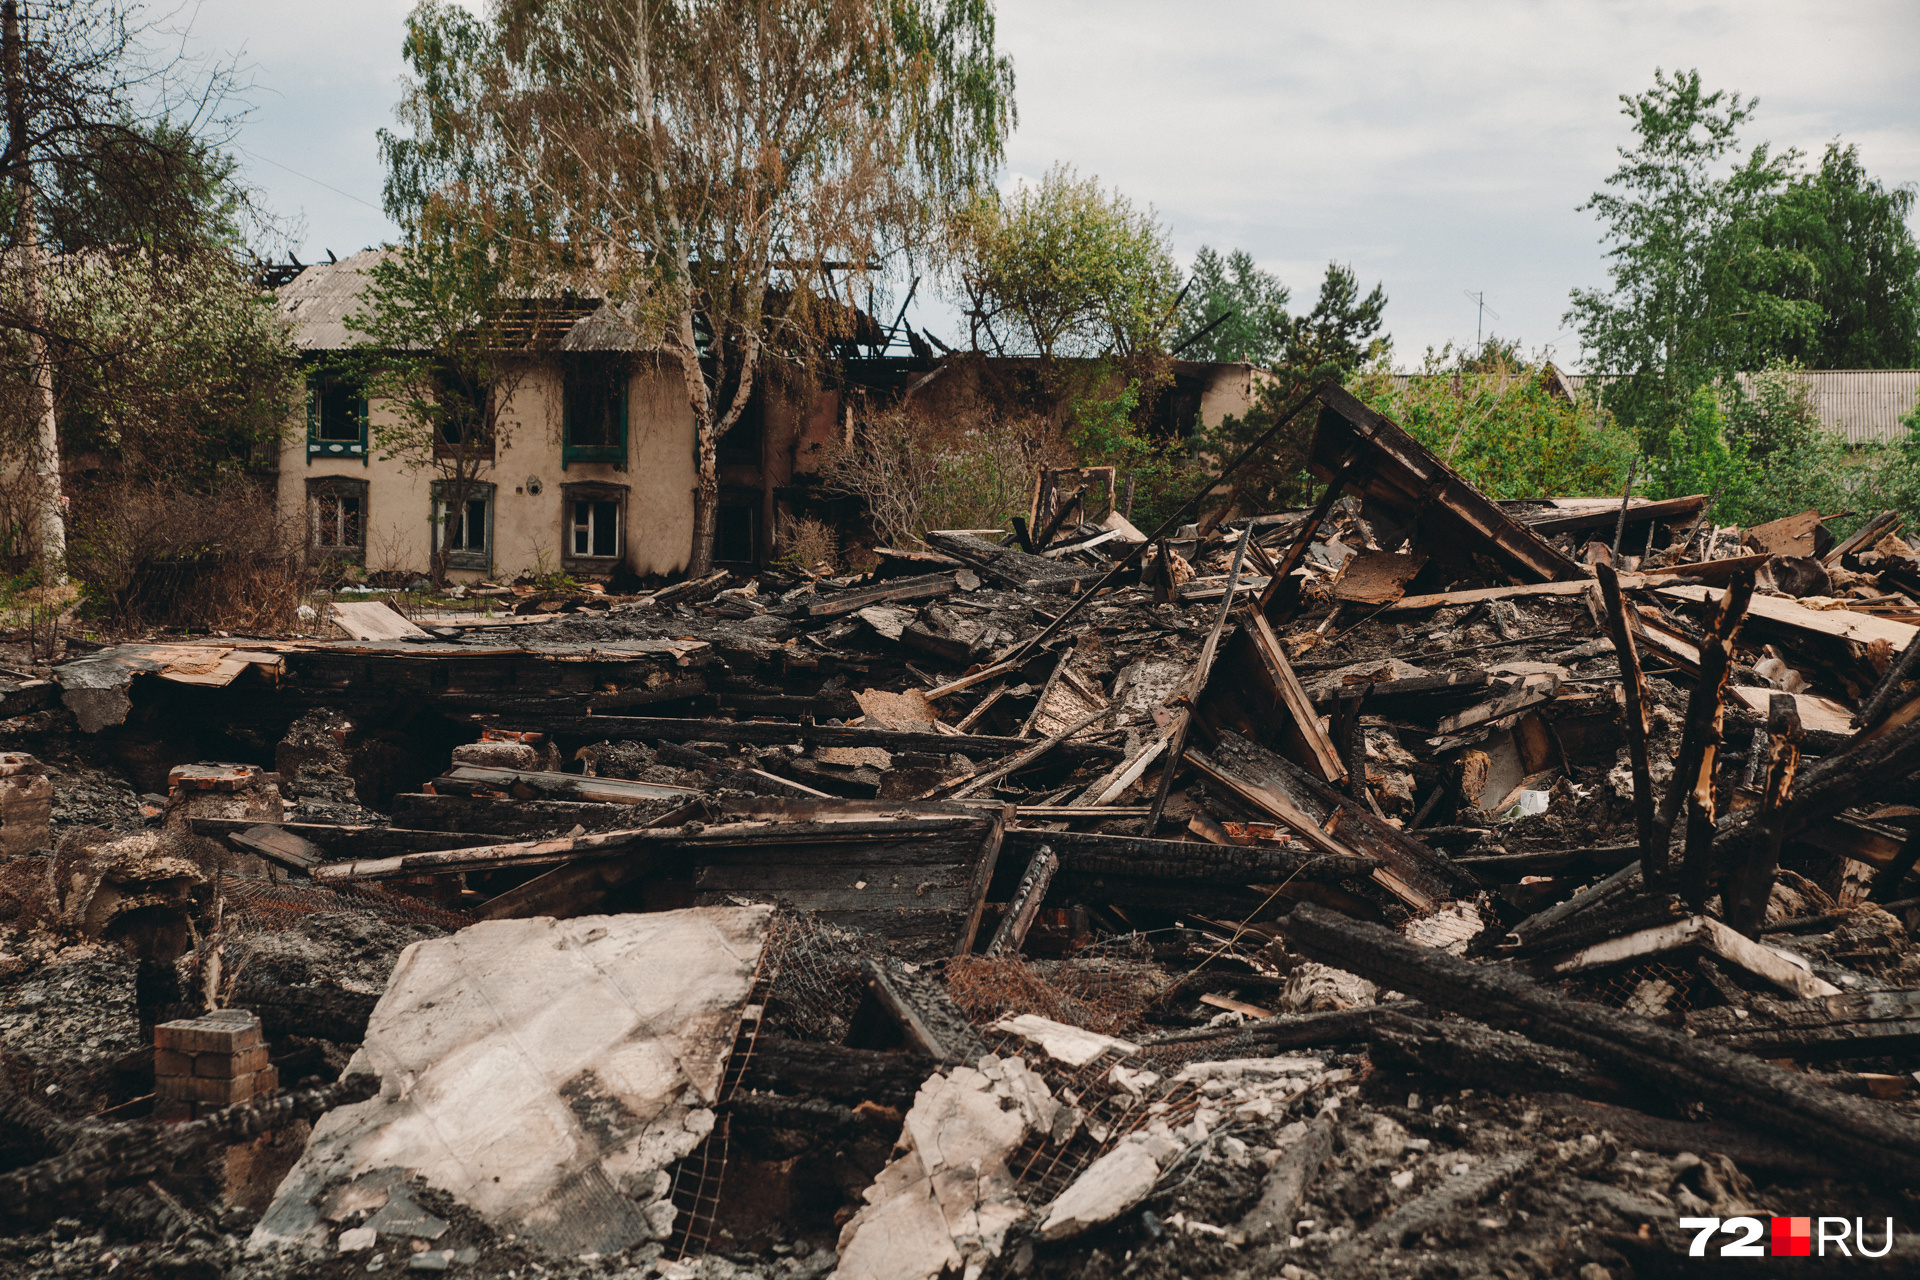 Обгоревшие руины — теперь это жители Камчатской видят постоянно, выходя из дома